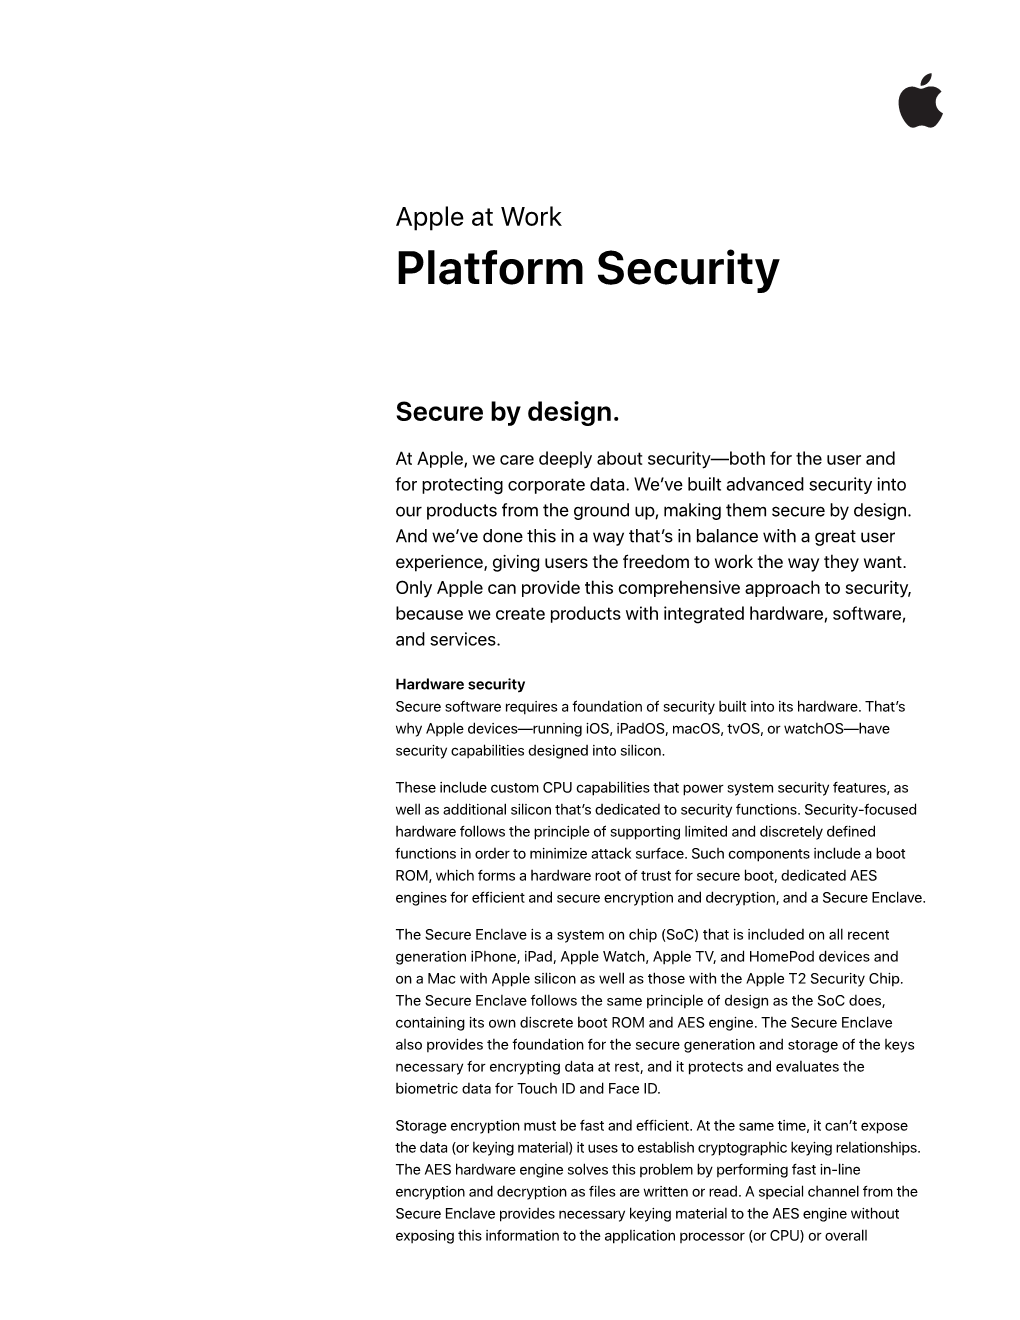 Platform Security